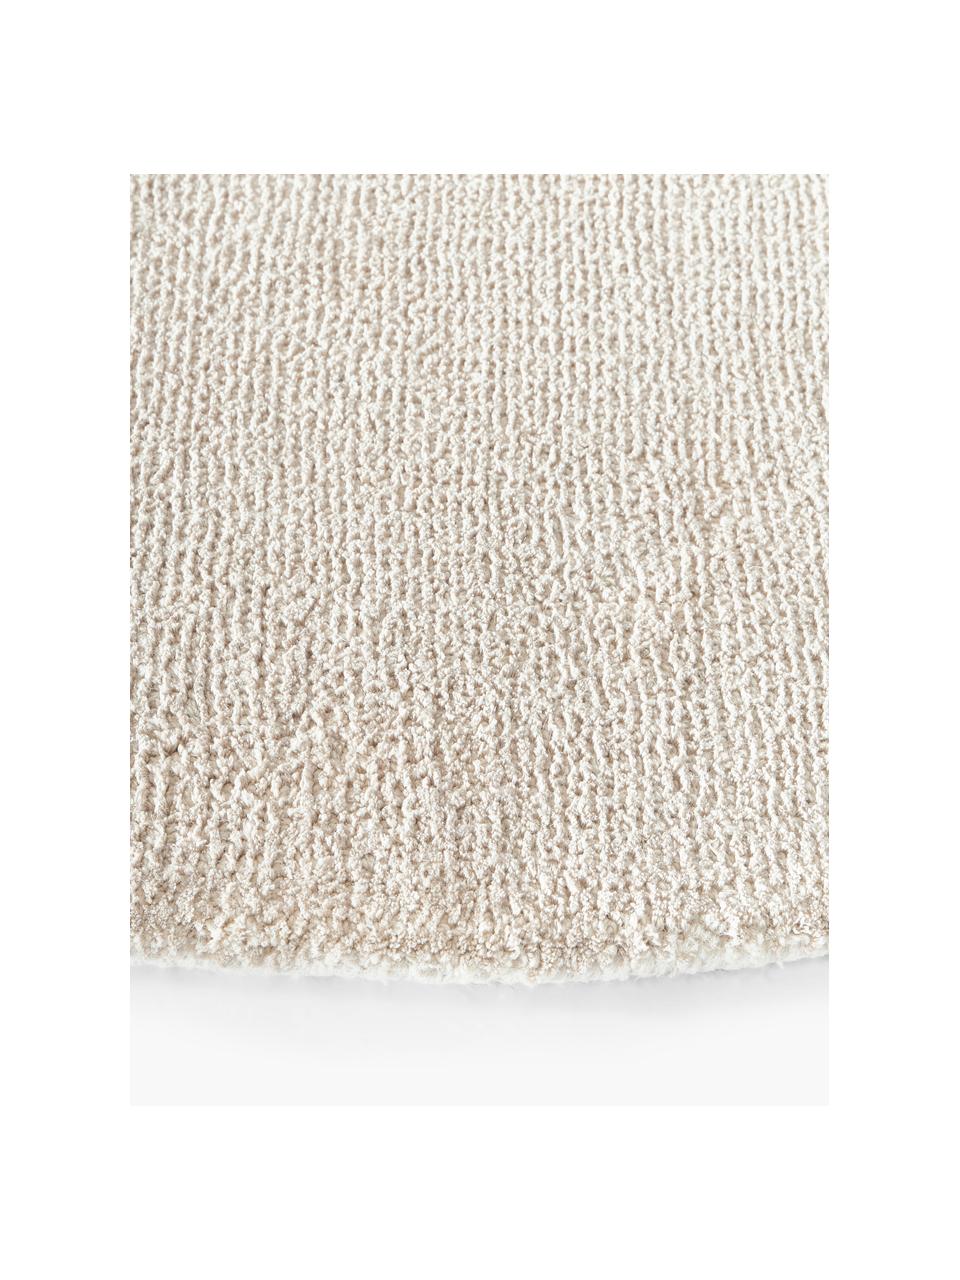 Tapis rond à poils ras tissé main Ainsley, 60 % polyester, certifié GRS
40 % laine, Beige, Ø 120 cm (taille S)